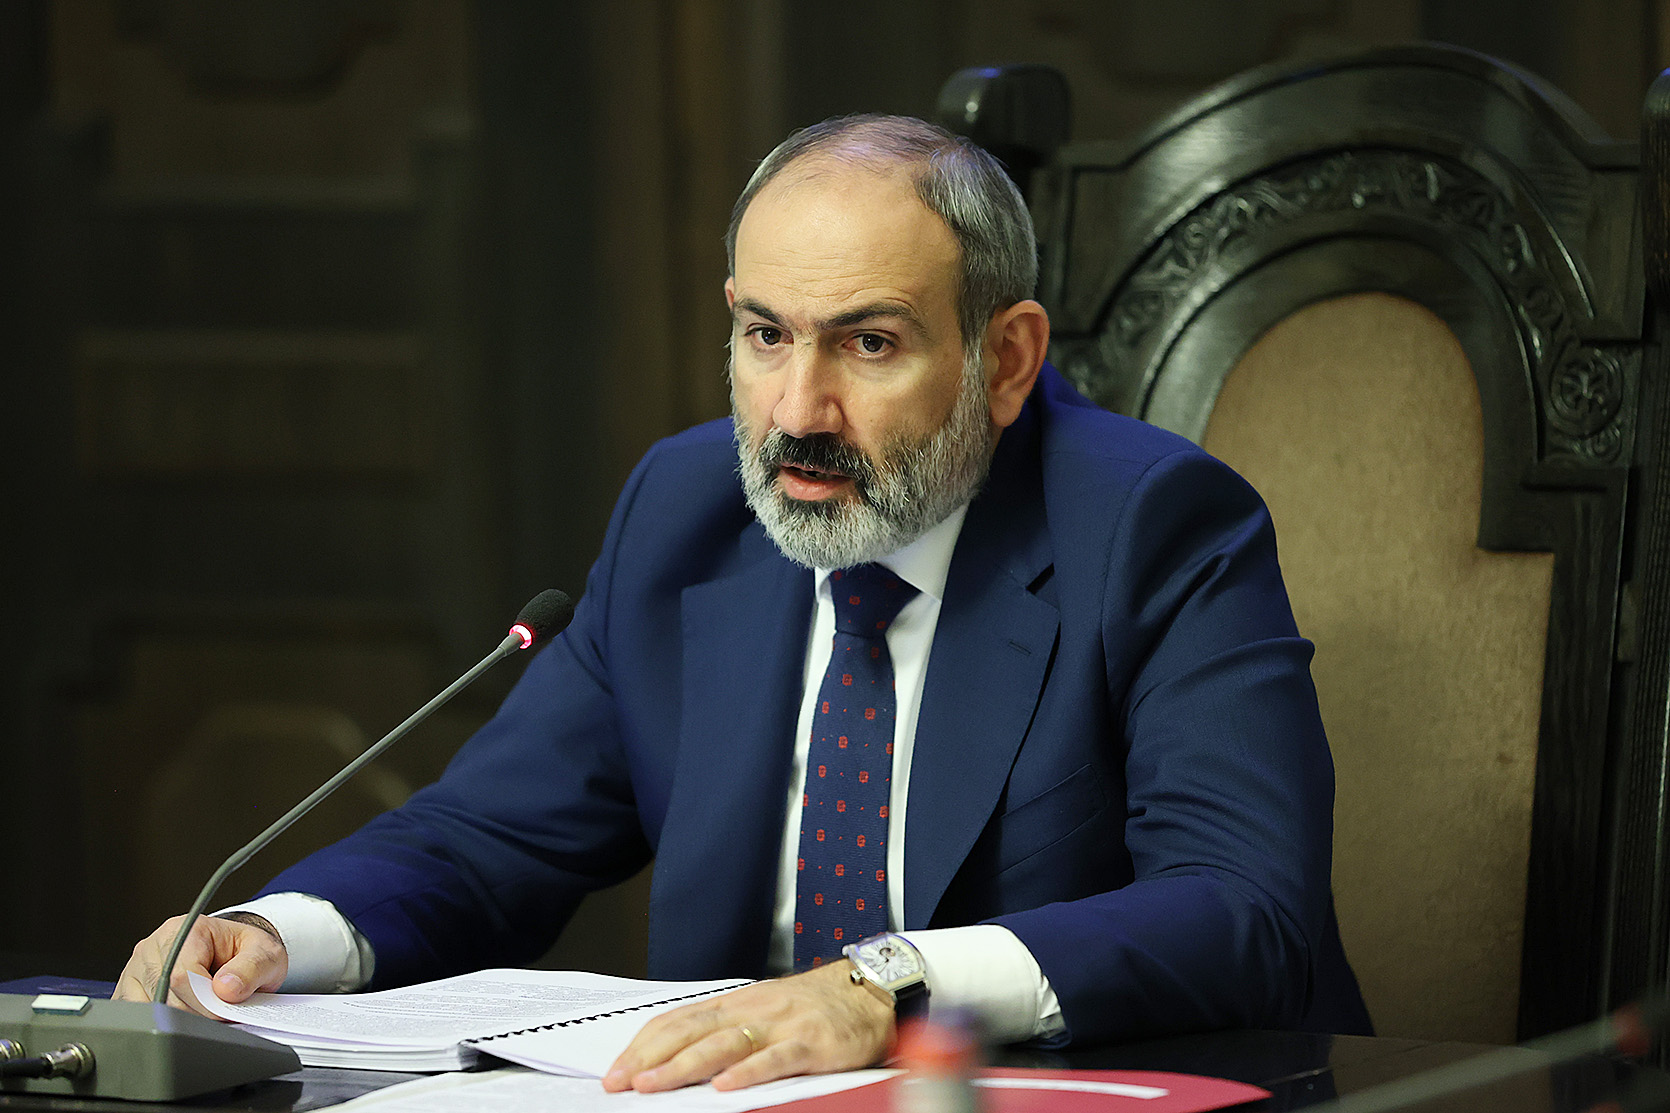 Причины существования армии обороны Нагорного Карабаха каждый может найти в пропаганде и действиях Азербайджана: премьер-министр Армении